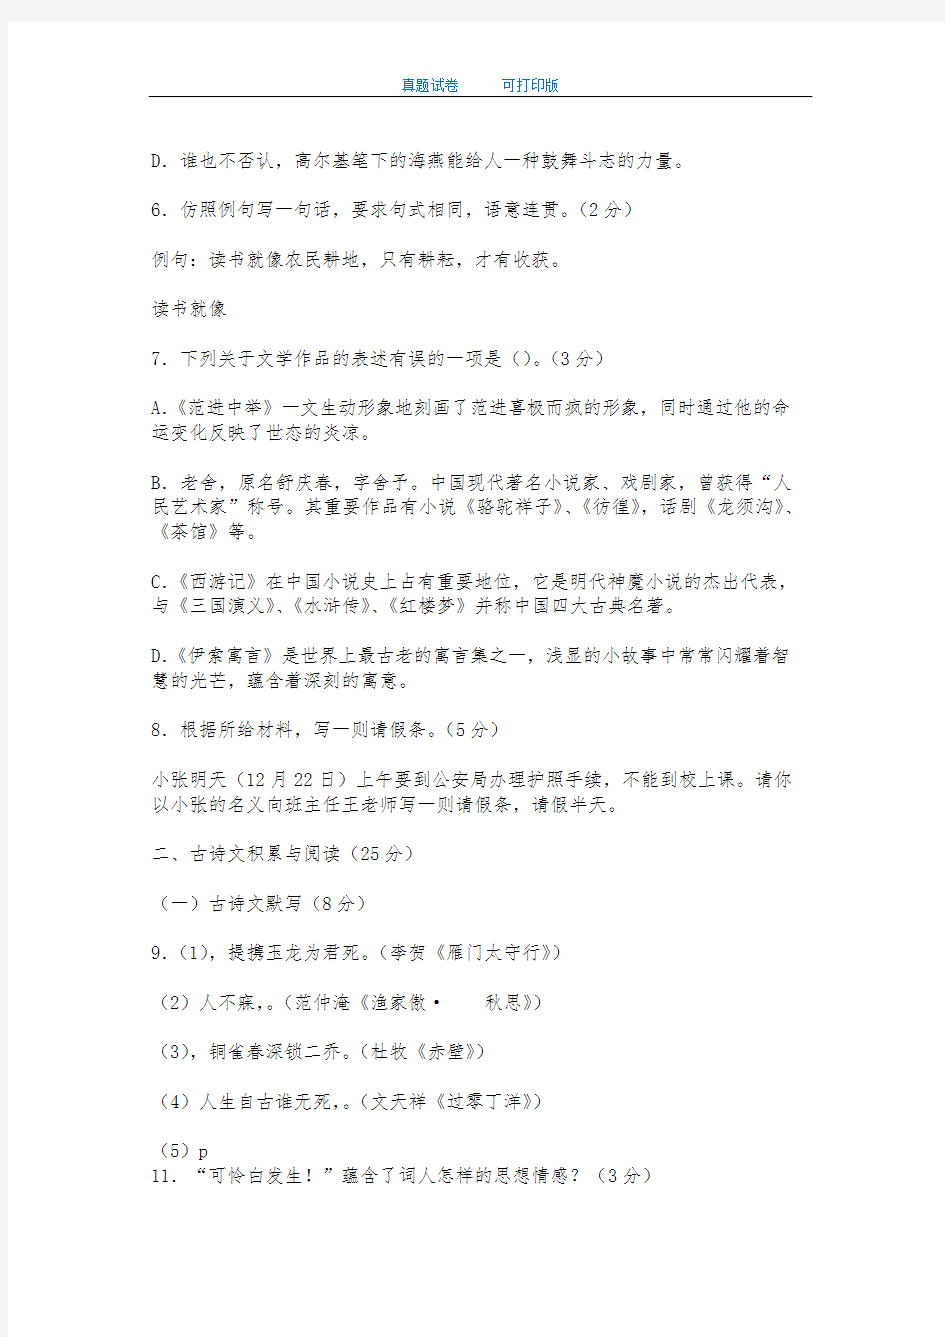 海南省2014年中考语文试卷-打印版